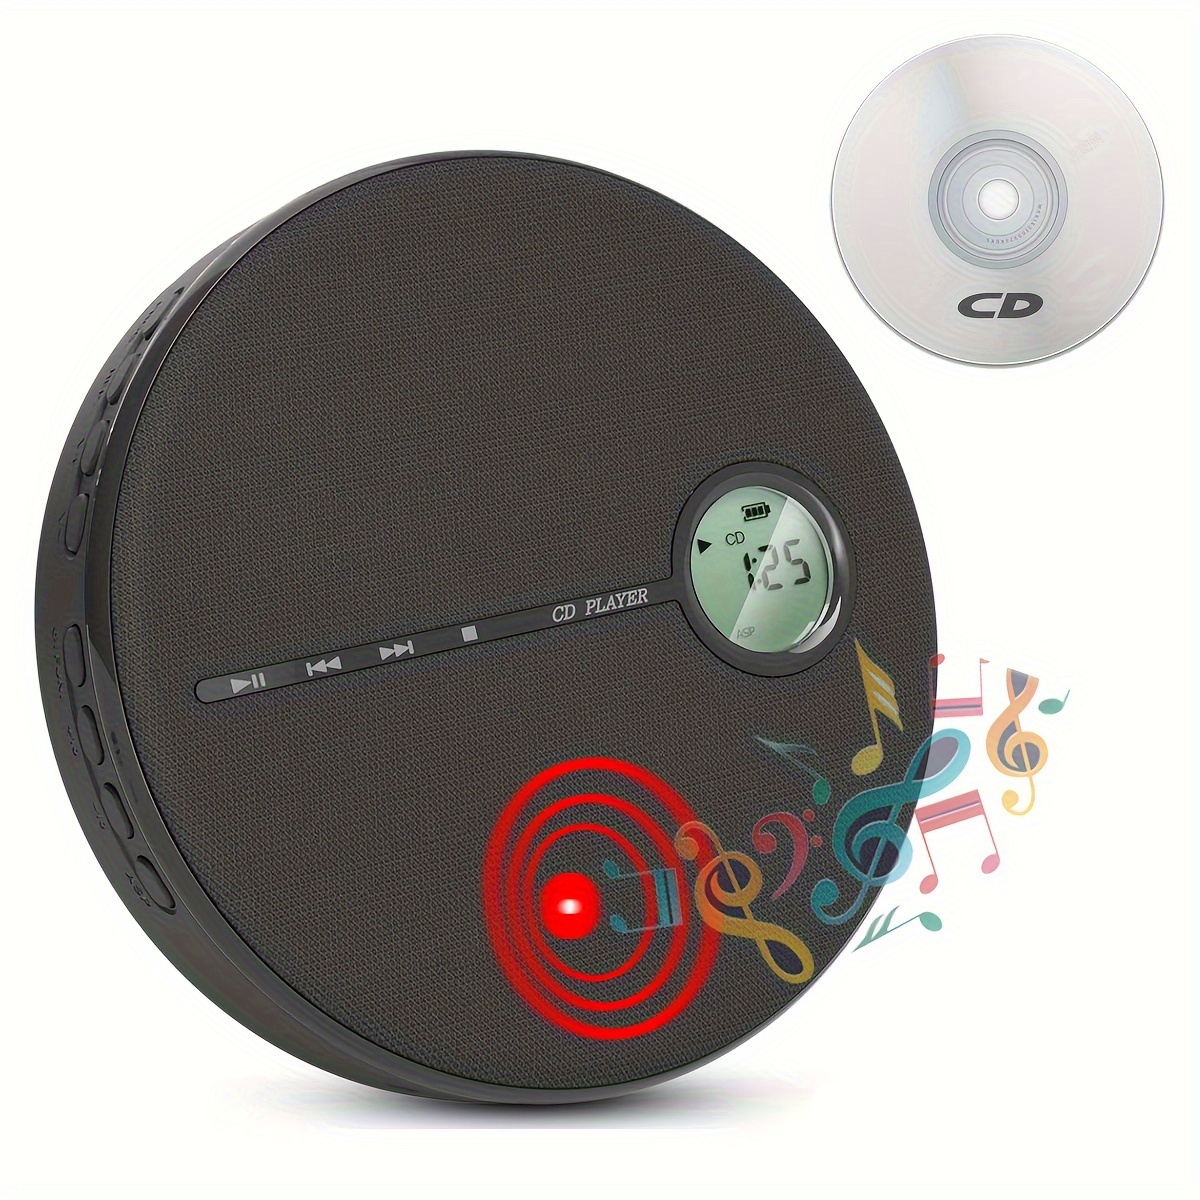  Reproductor de CD, reproductor de CD Bluetooth 5.0 con altavoz  de alta fidelidad, reproductor de CD portátil SHIWAKOTO para el hogar  reproductor de música de CD con control remoto, lindo reproductor